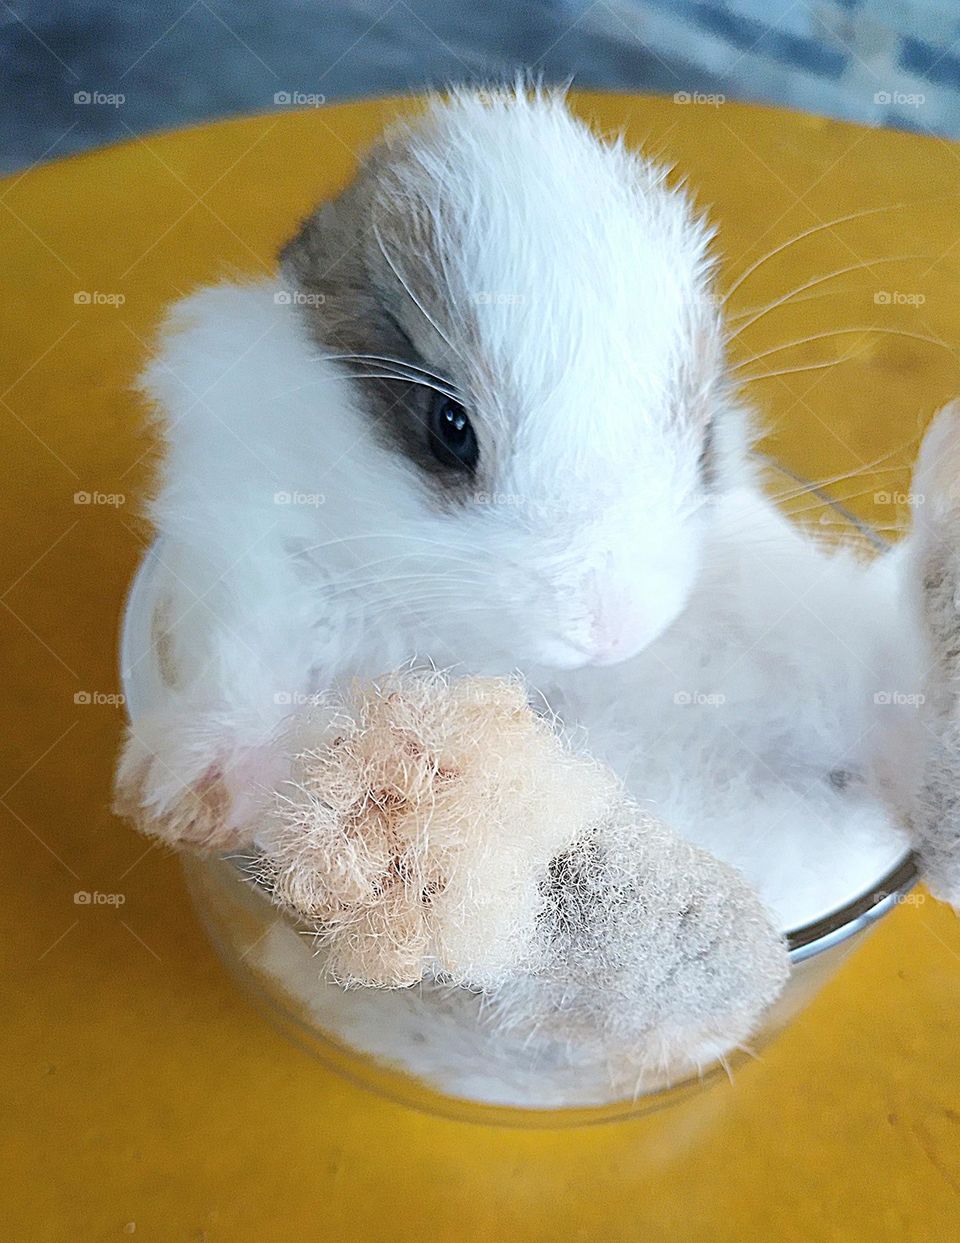 conejito adorable y tierno rabbit so cute